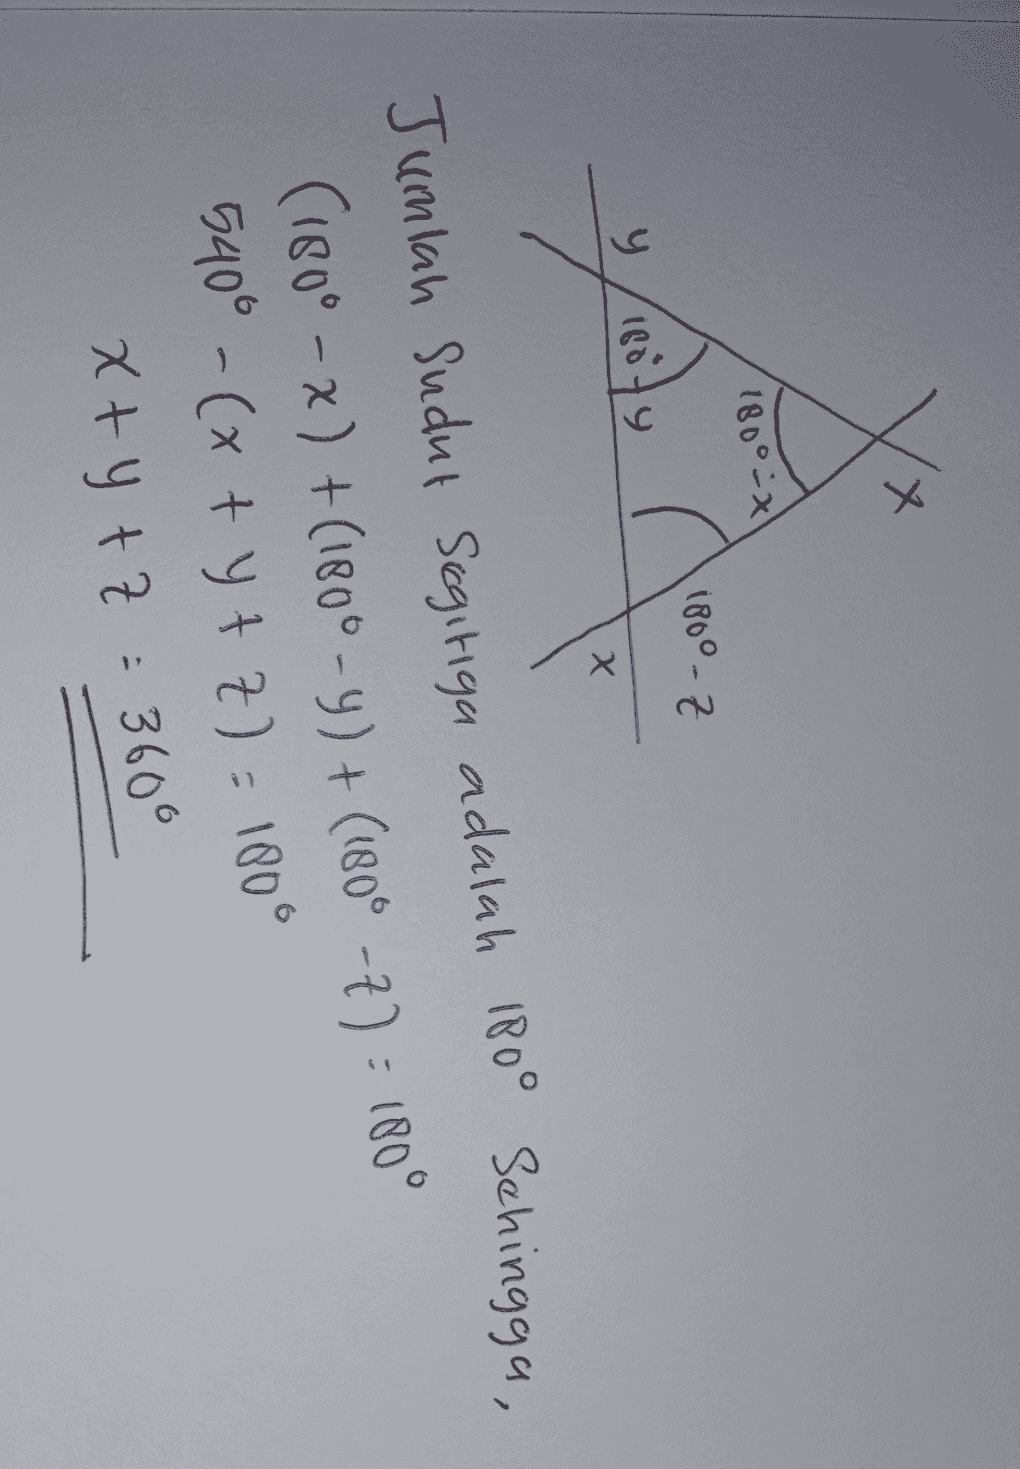 + X 180° - x) 180°-Z y 16079 X Х Jumlah Sudut Segitiga adalah 180° Sehingga, (180° - x) +(1800-y)+(1806 -2): 180° 5400 - (x + y + 7) - 180° x+y +z = 360° 